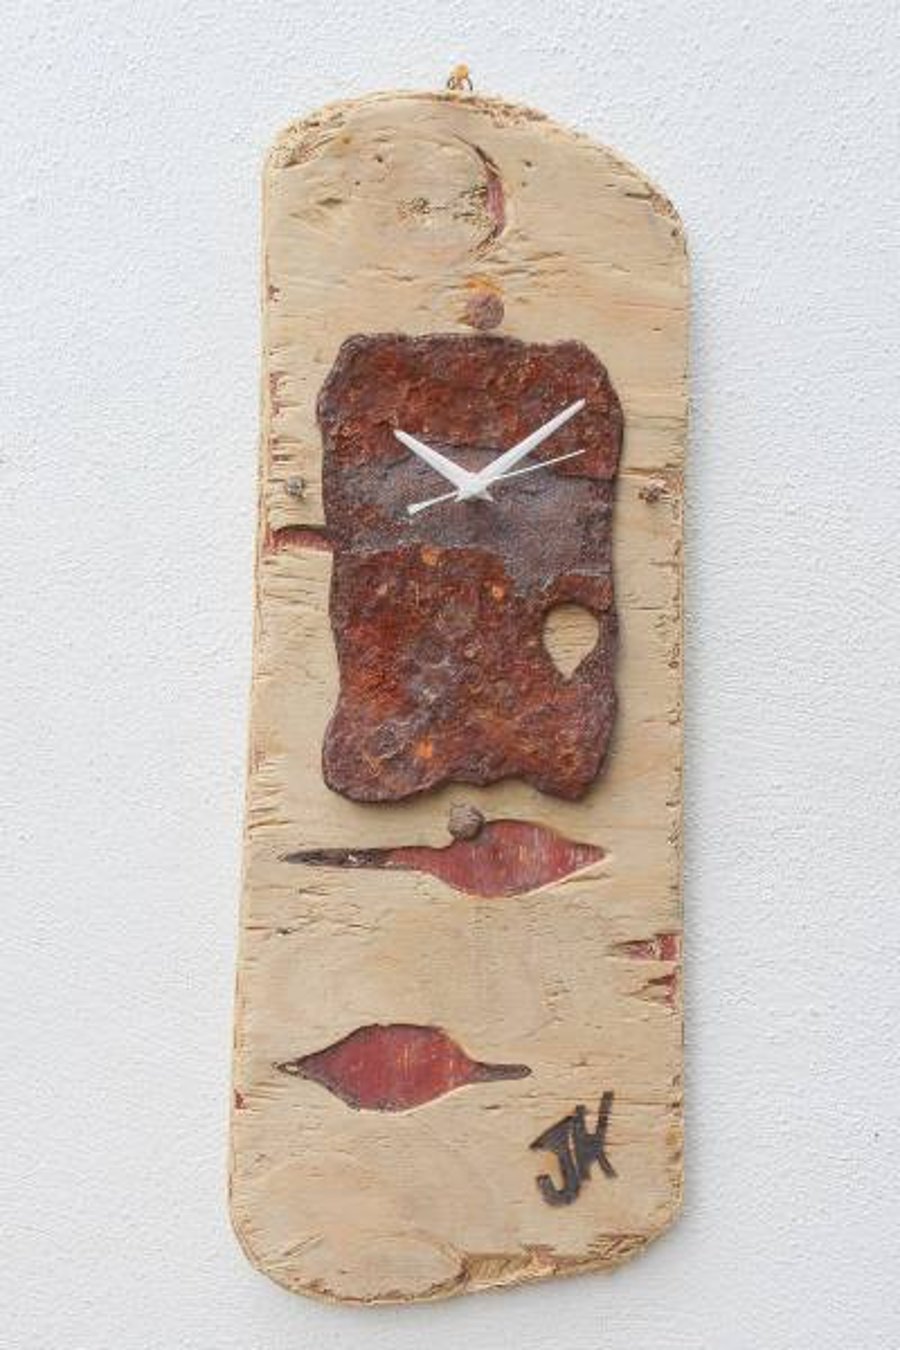 Driftwood Clock, Driftwood Wall Clock, Drift Wood Clock, Beach finds Clock.